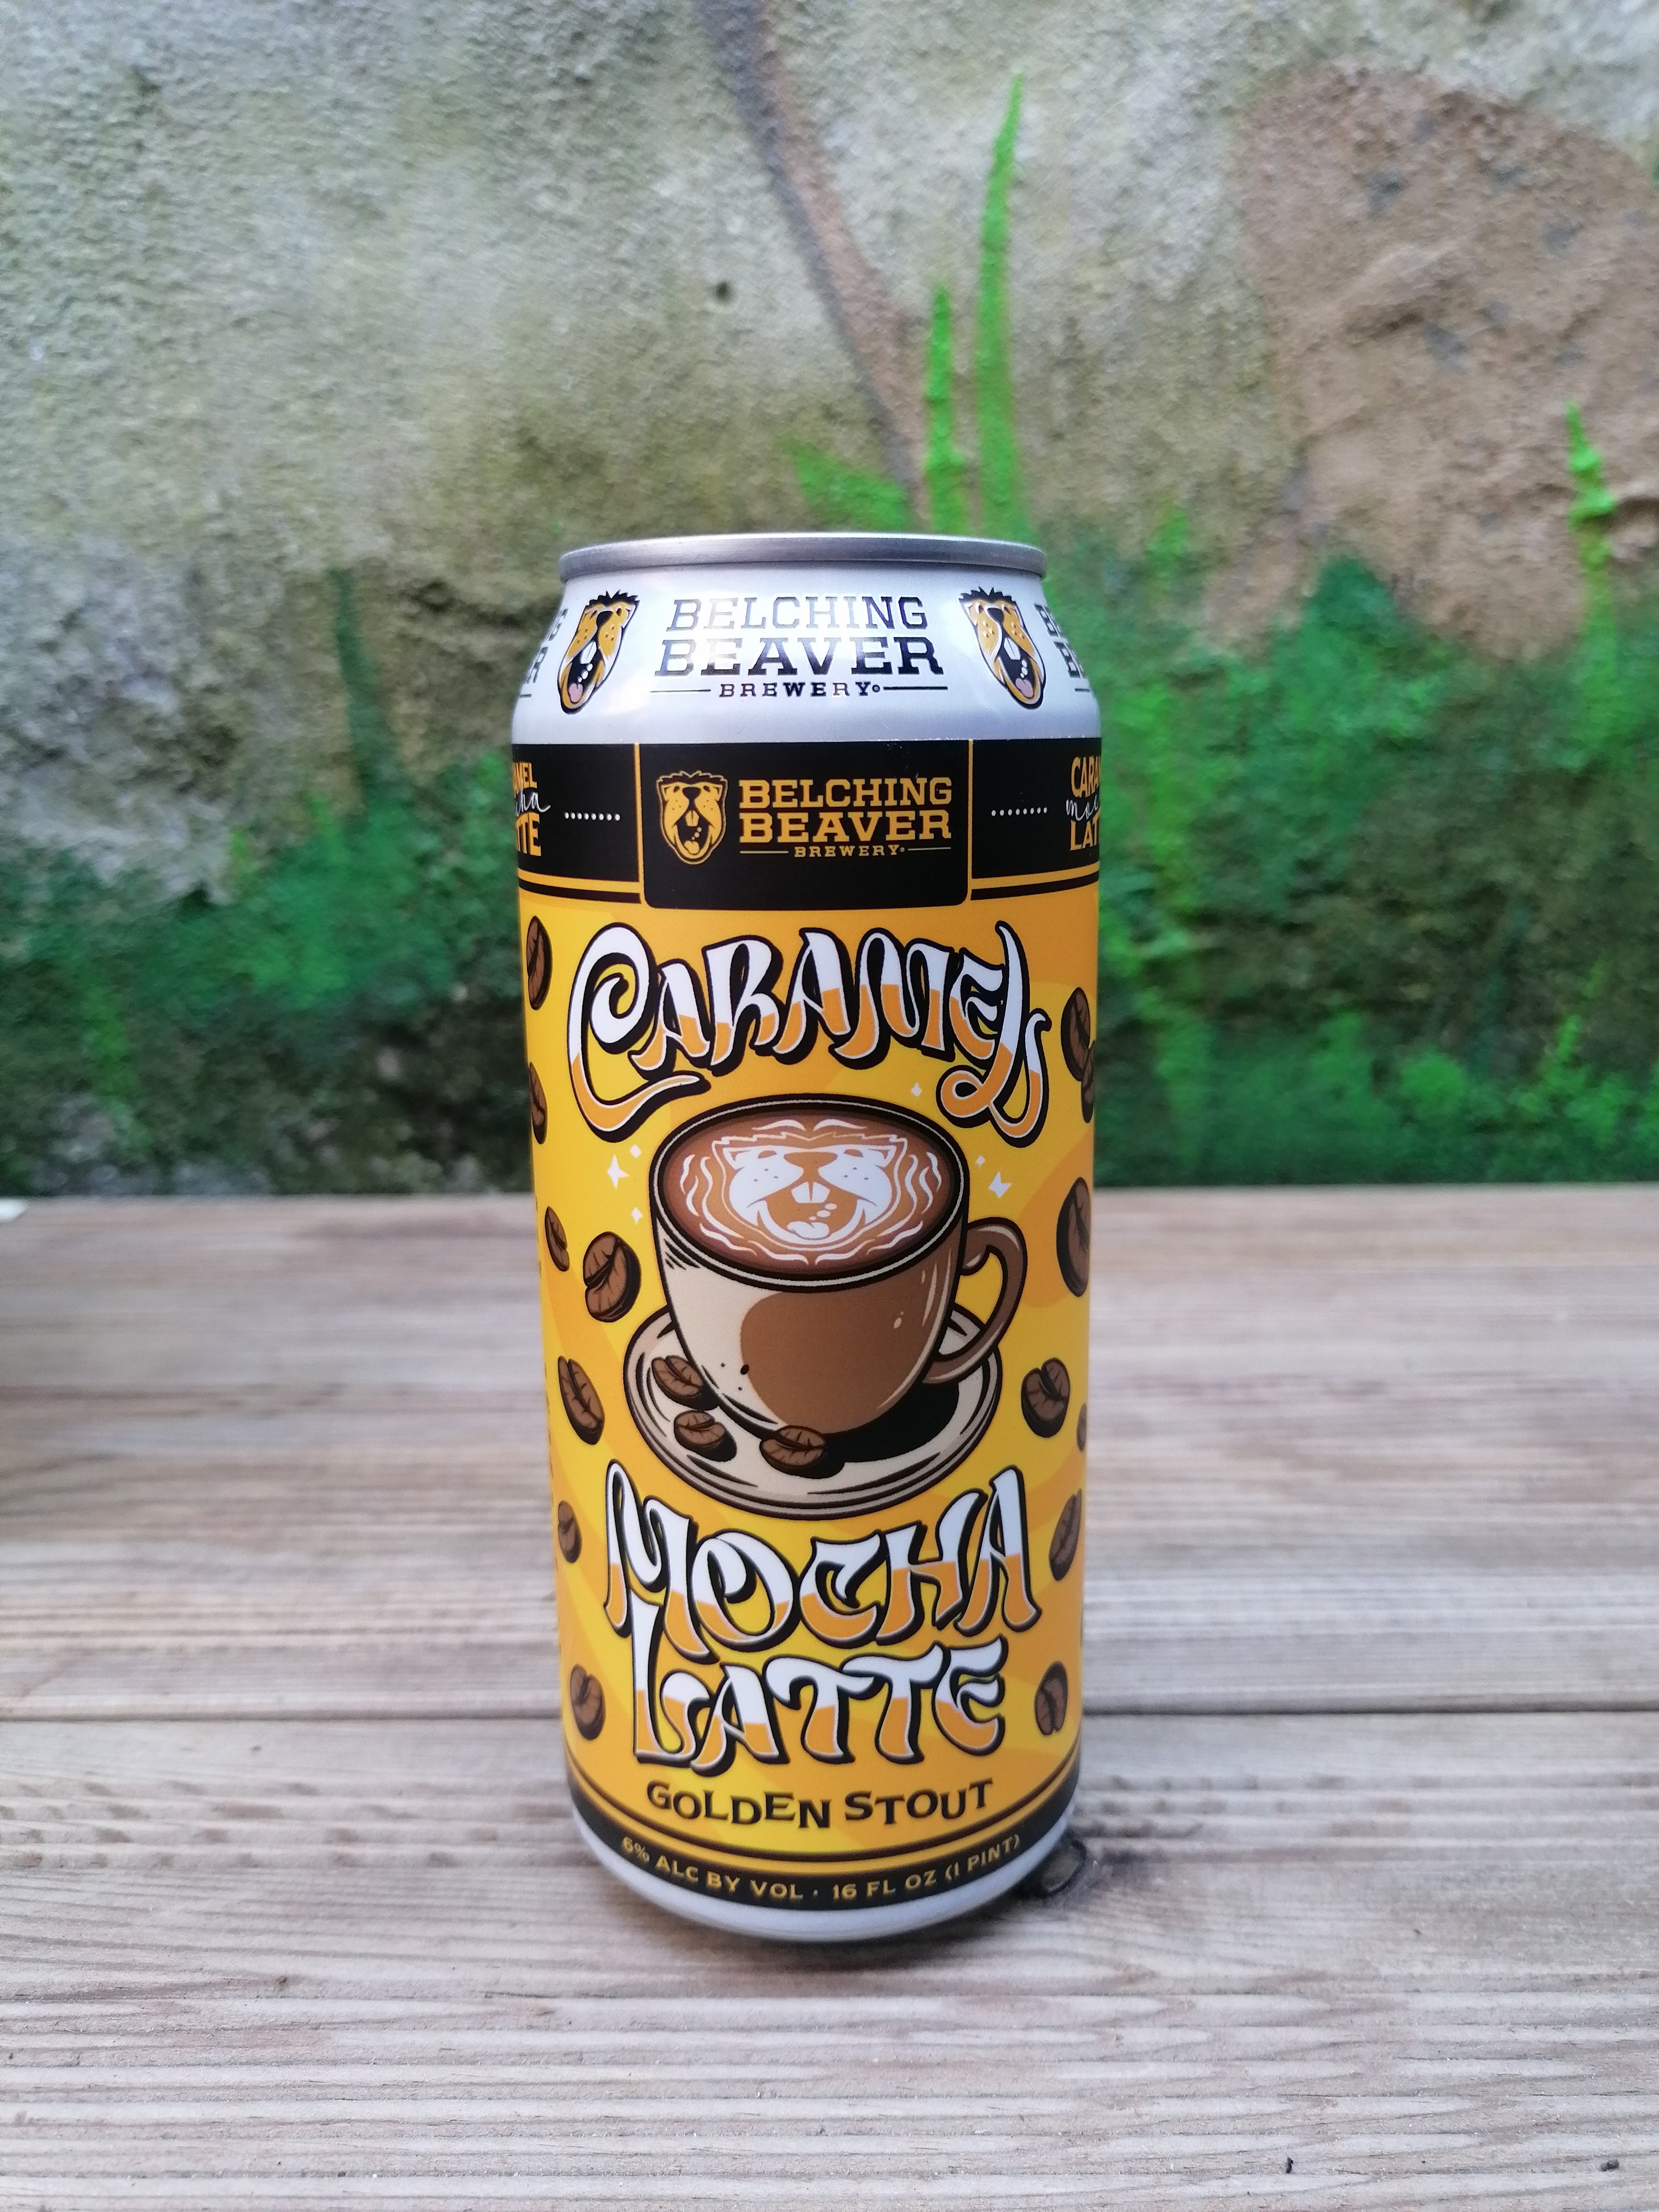 Billede af Belching Beaver Brewery "Caramel Mocha Latte" | 6% | 47cl | Golden Stout